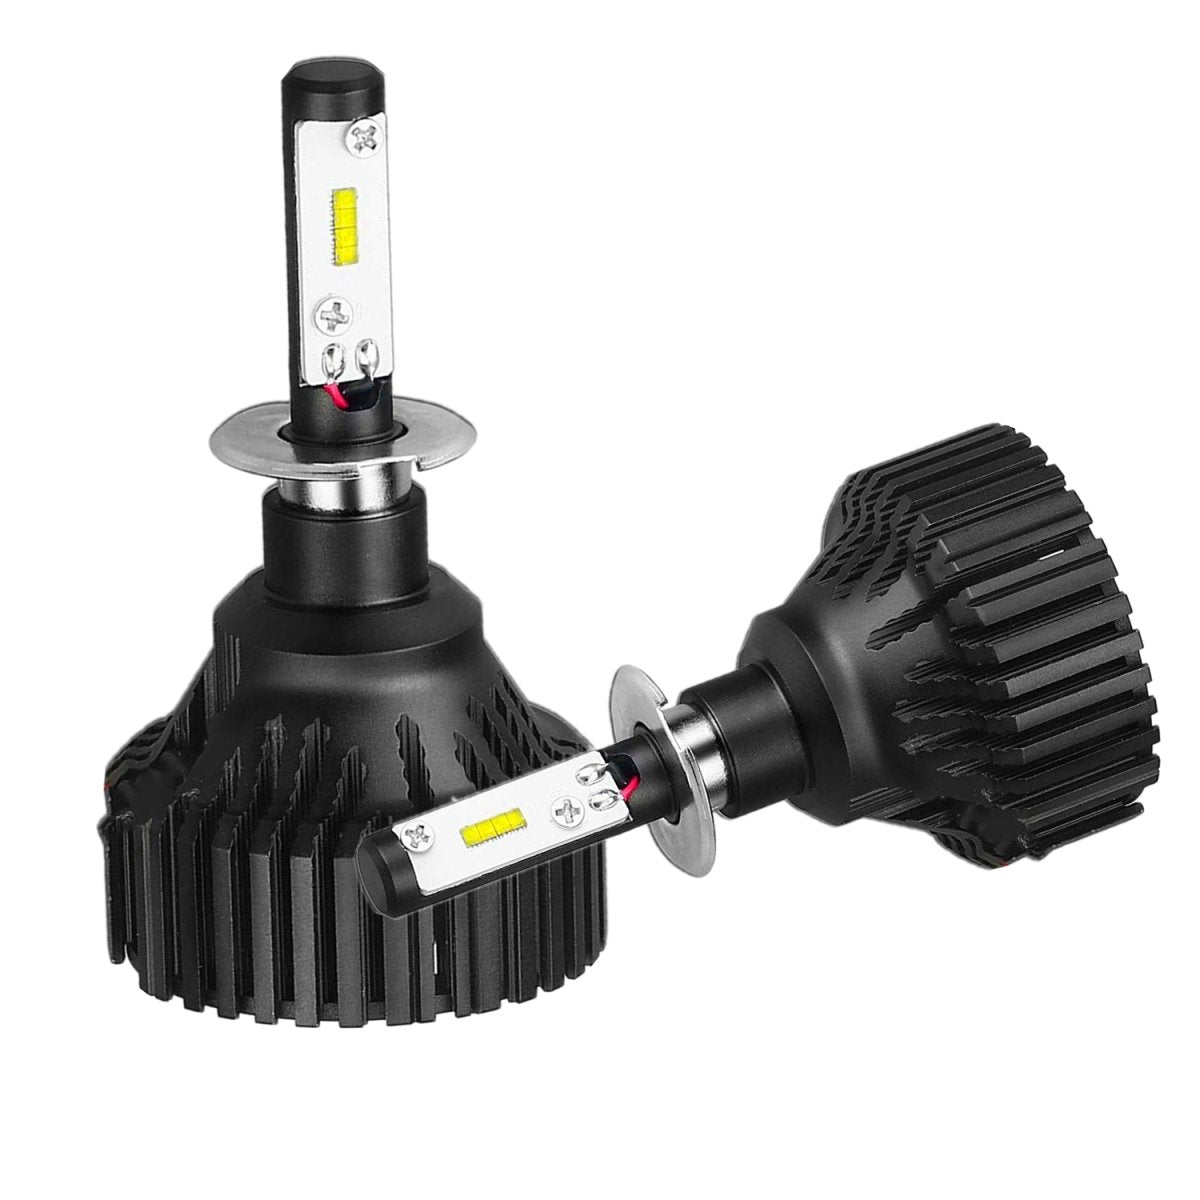 H3 LED Kits Bulbs Fog Lights for Cars, Trucks, 6500K Xenon White -Alla Lighting